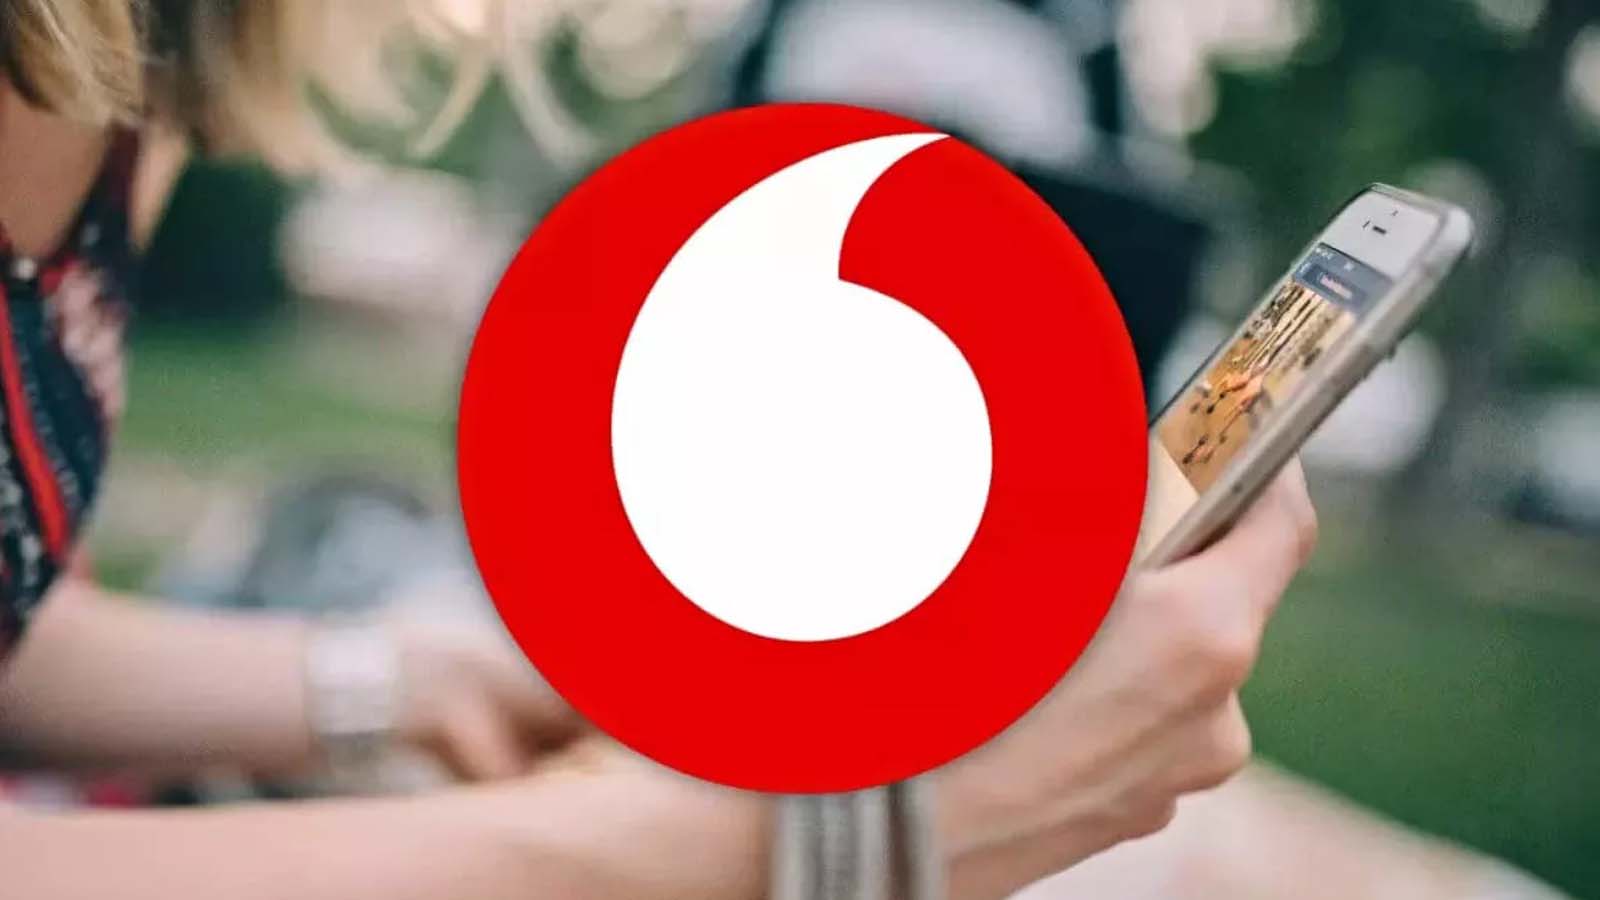 Analisi delle dinamiche in corso e delle trattative interrotte da Vodafone